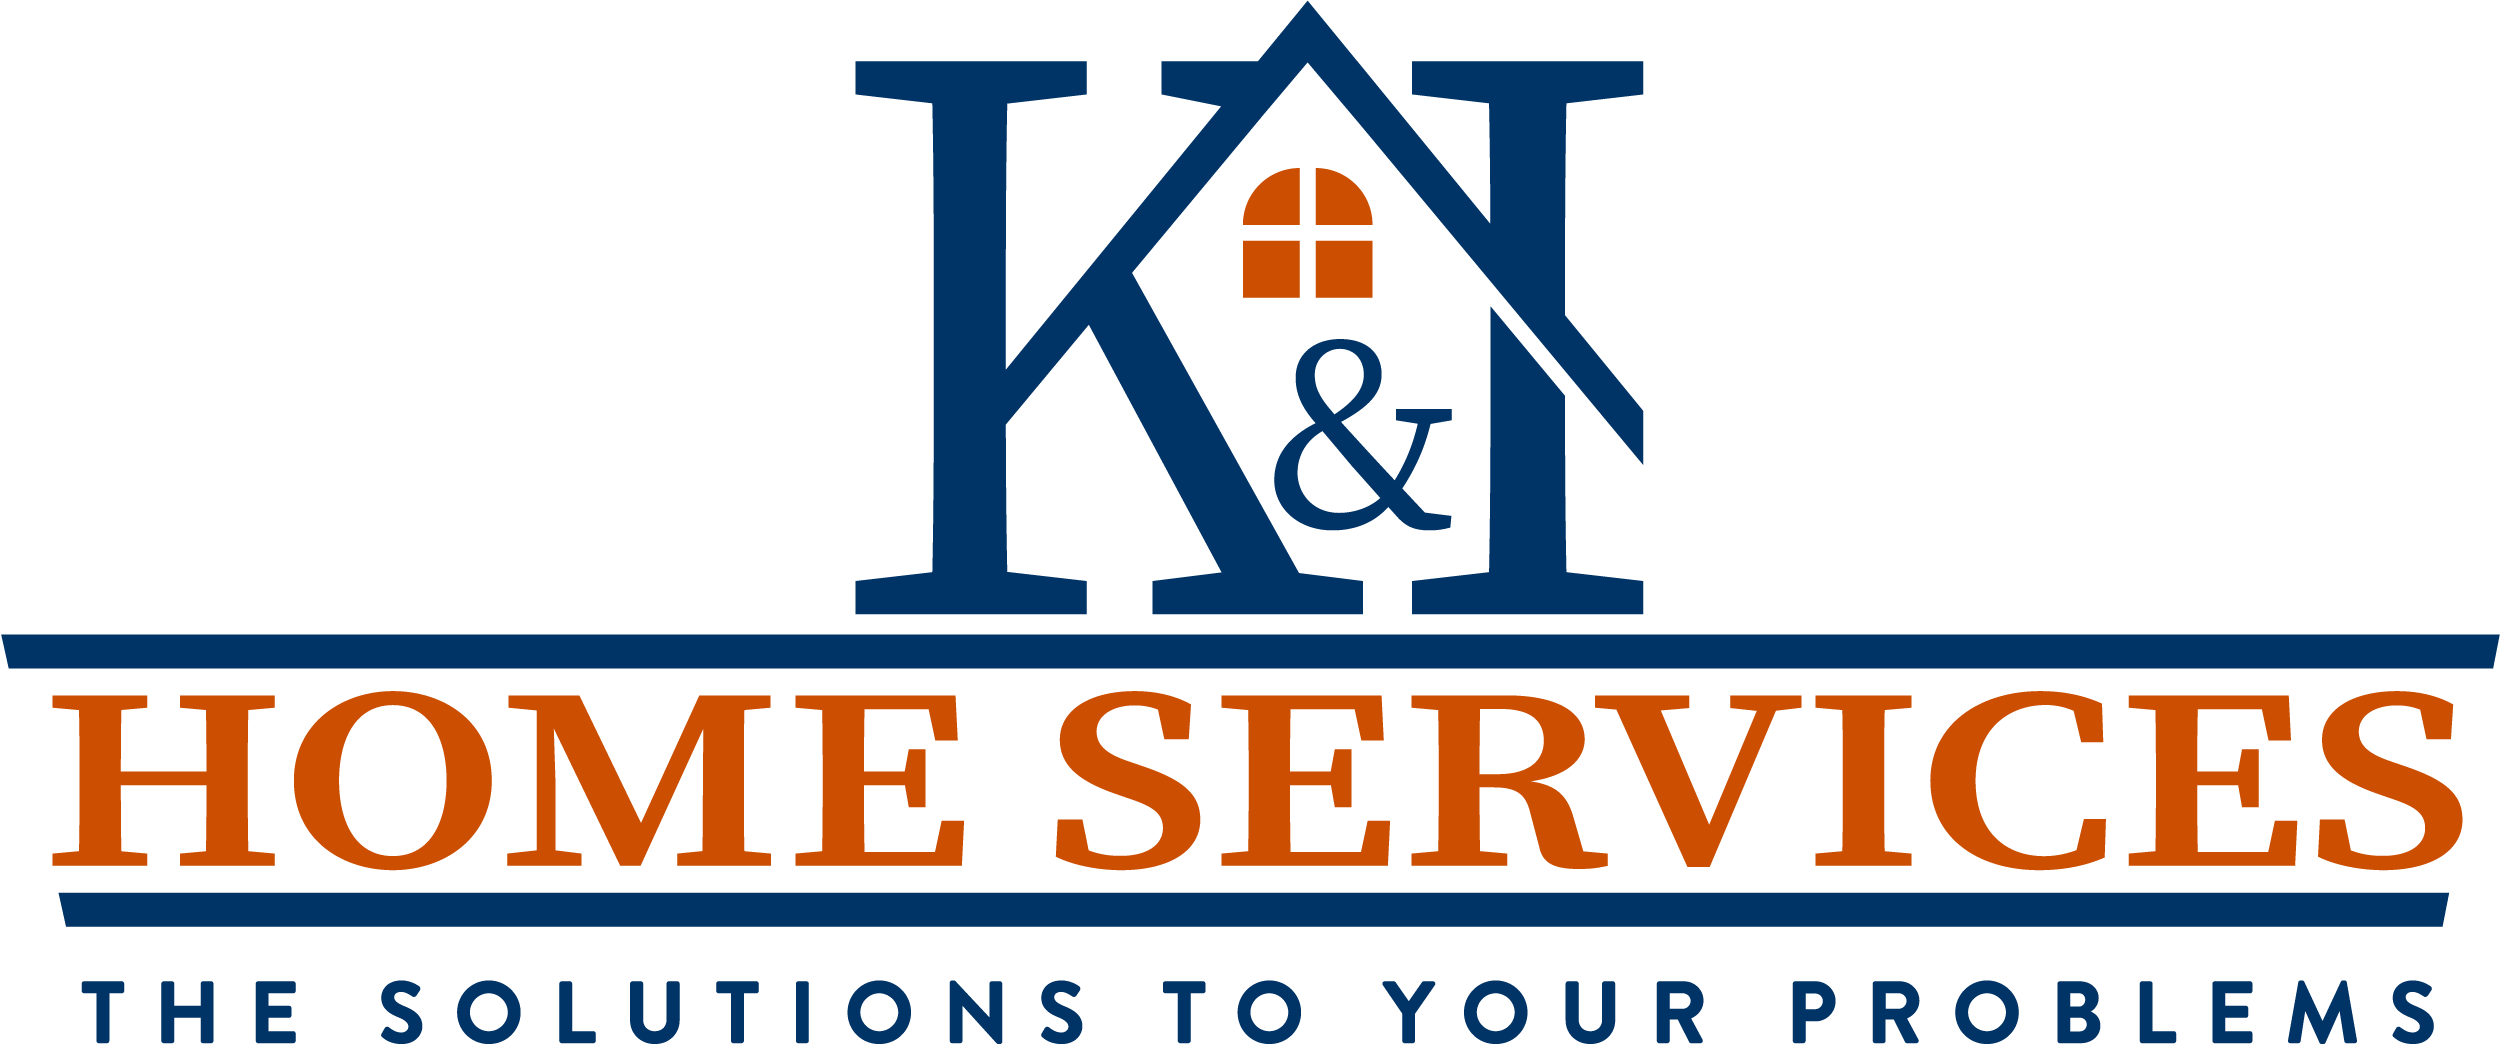 K&I Home Services  logo